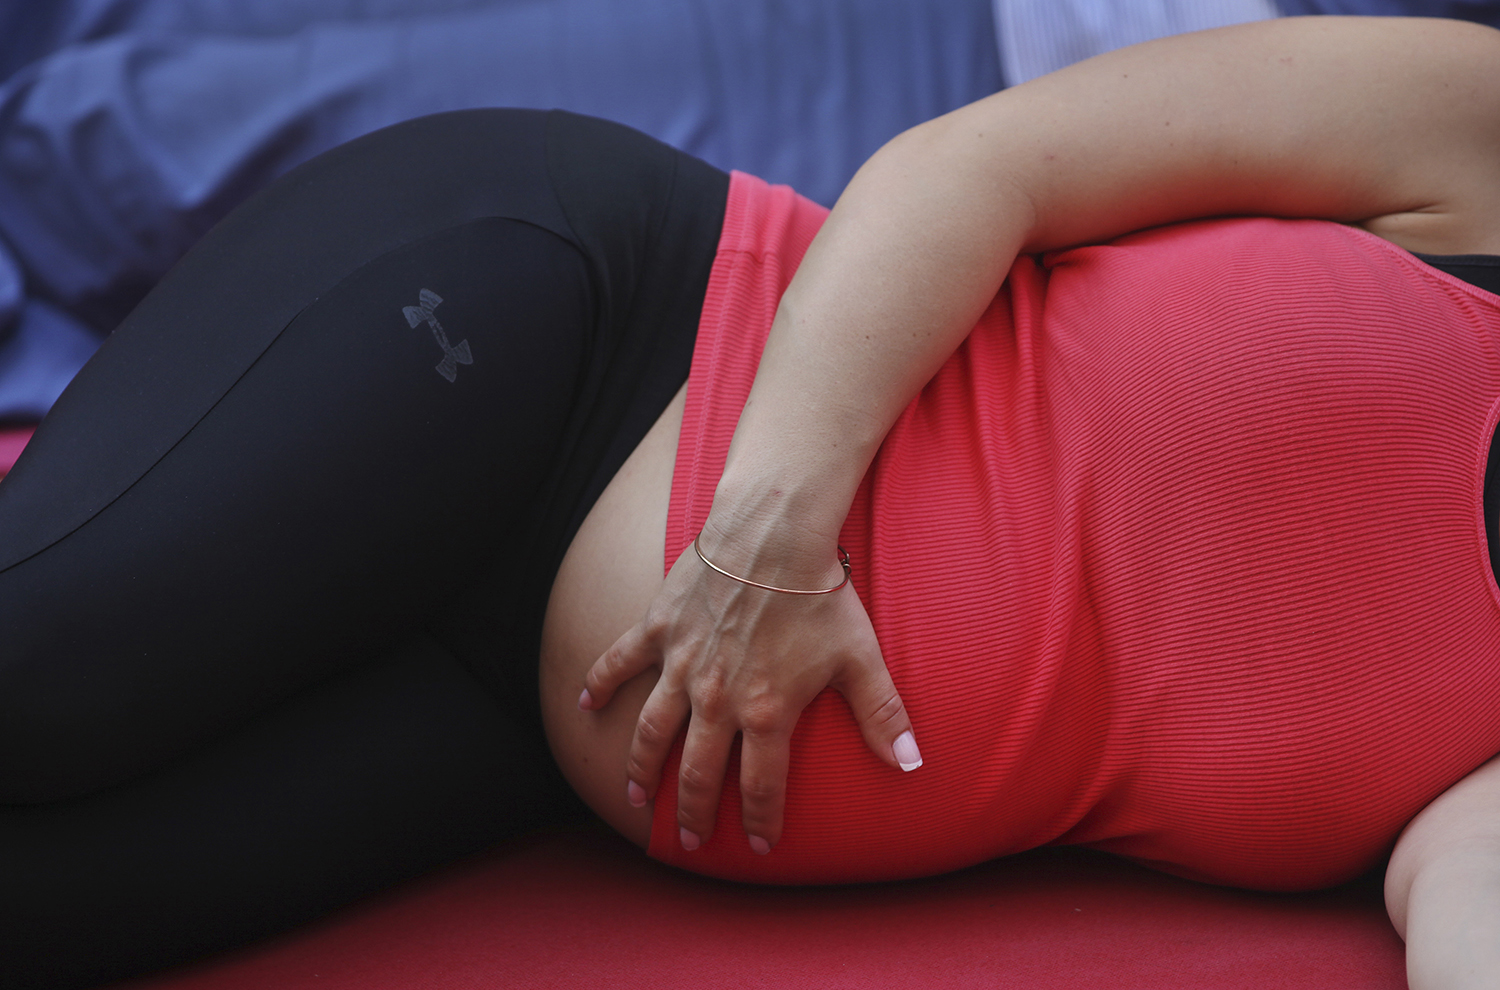 Investigadores descubren que el embarazo provoca cambios duraderos en el cerebro